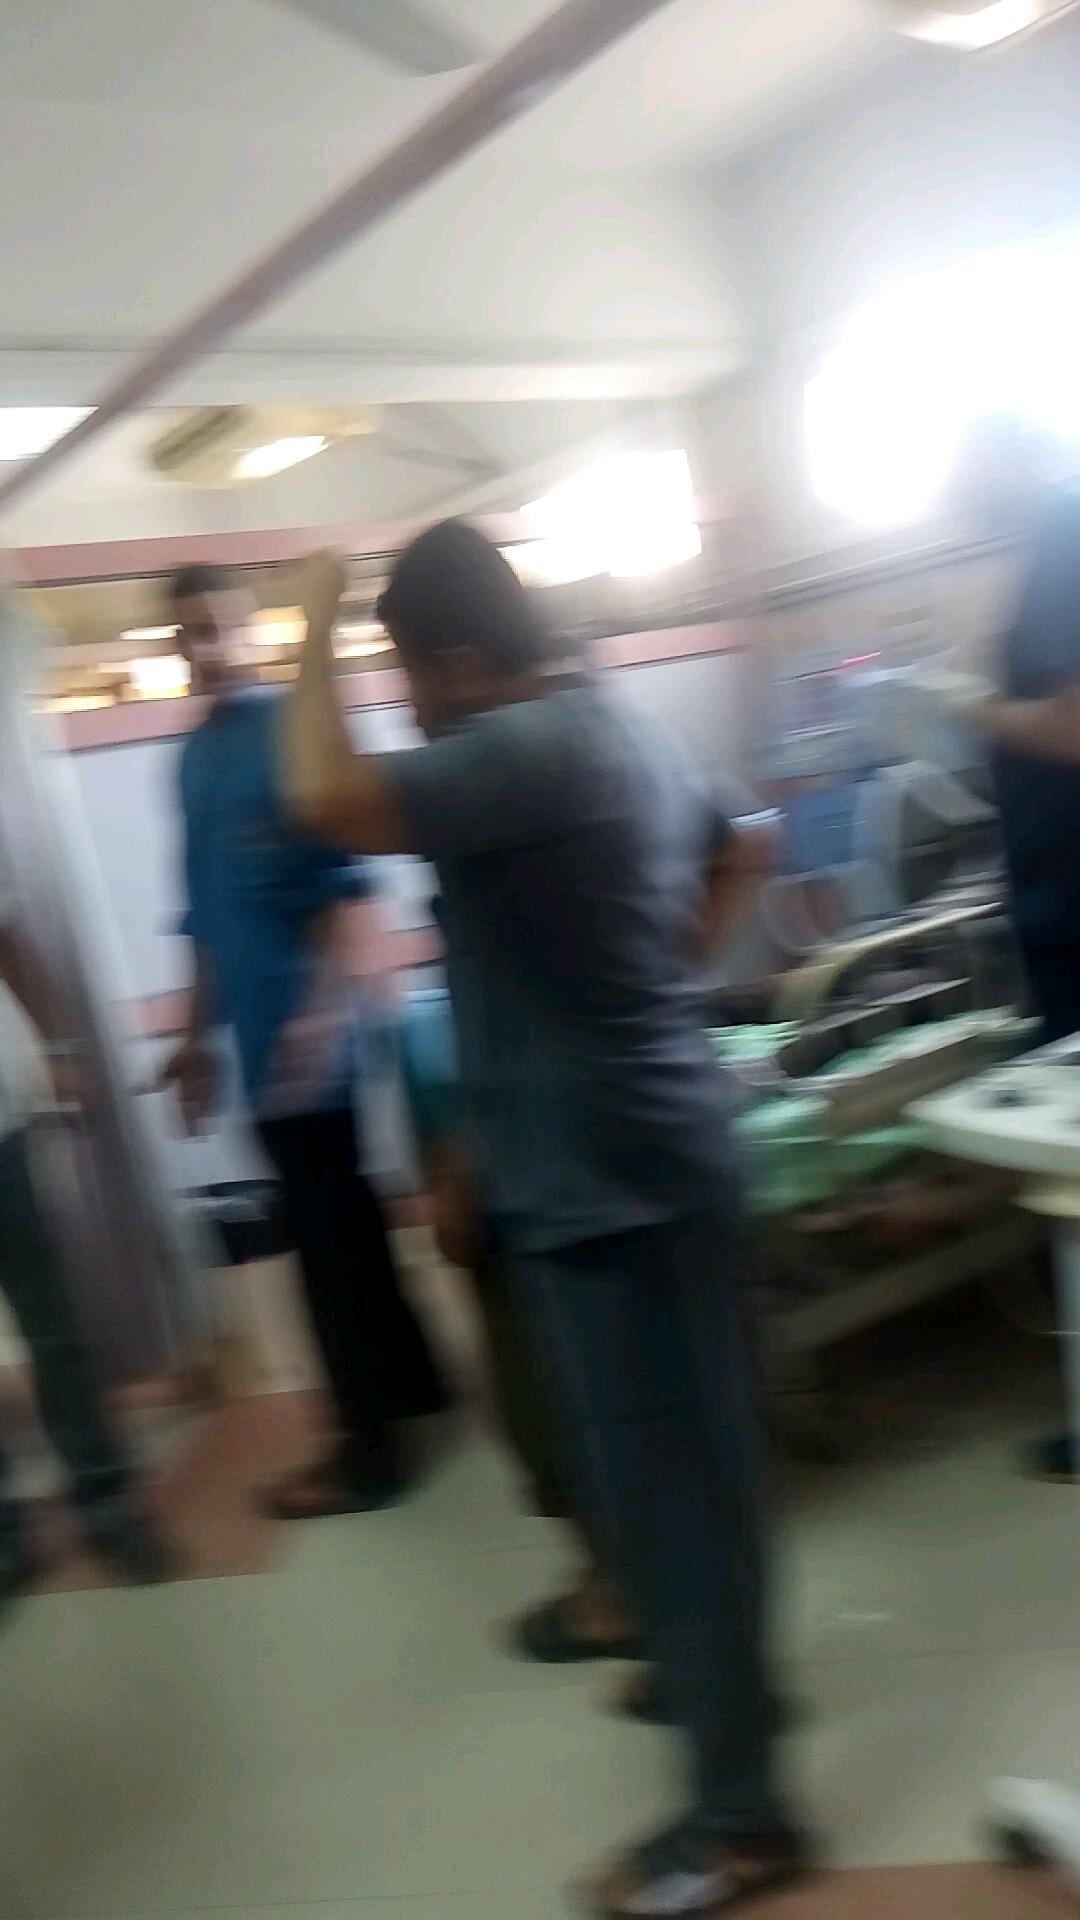 وصول 6 من ضحايا الغسيل الكلوي بمستشفي ديرب نجم لعناية مستشفى جامعة الزقازيق (5)